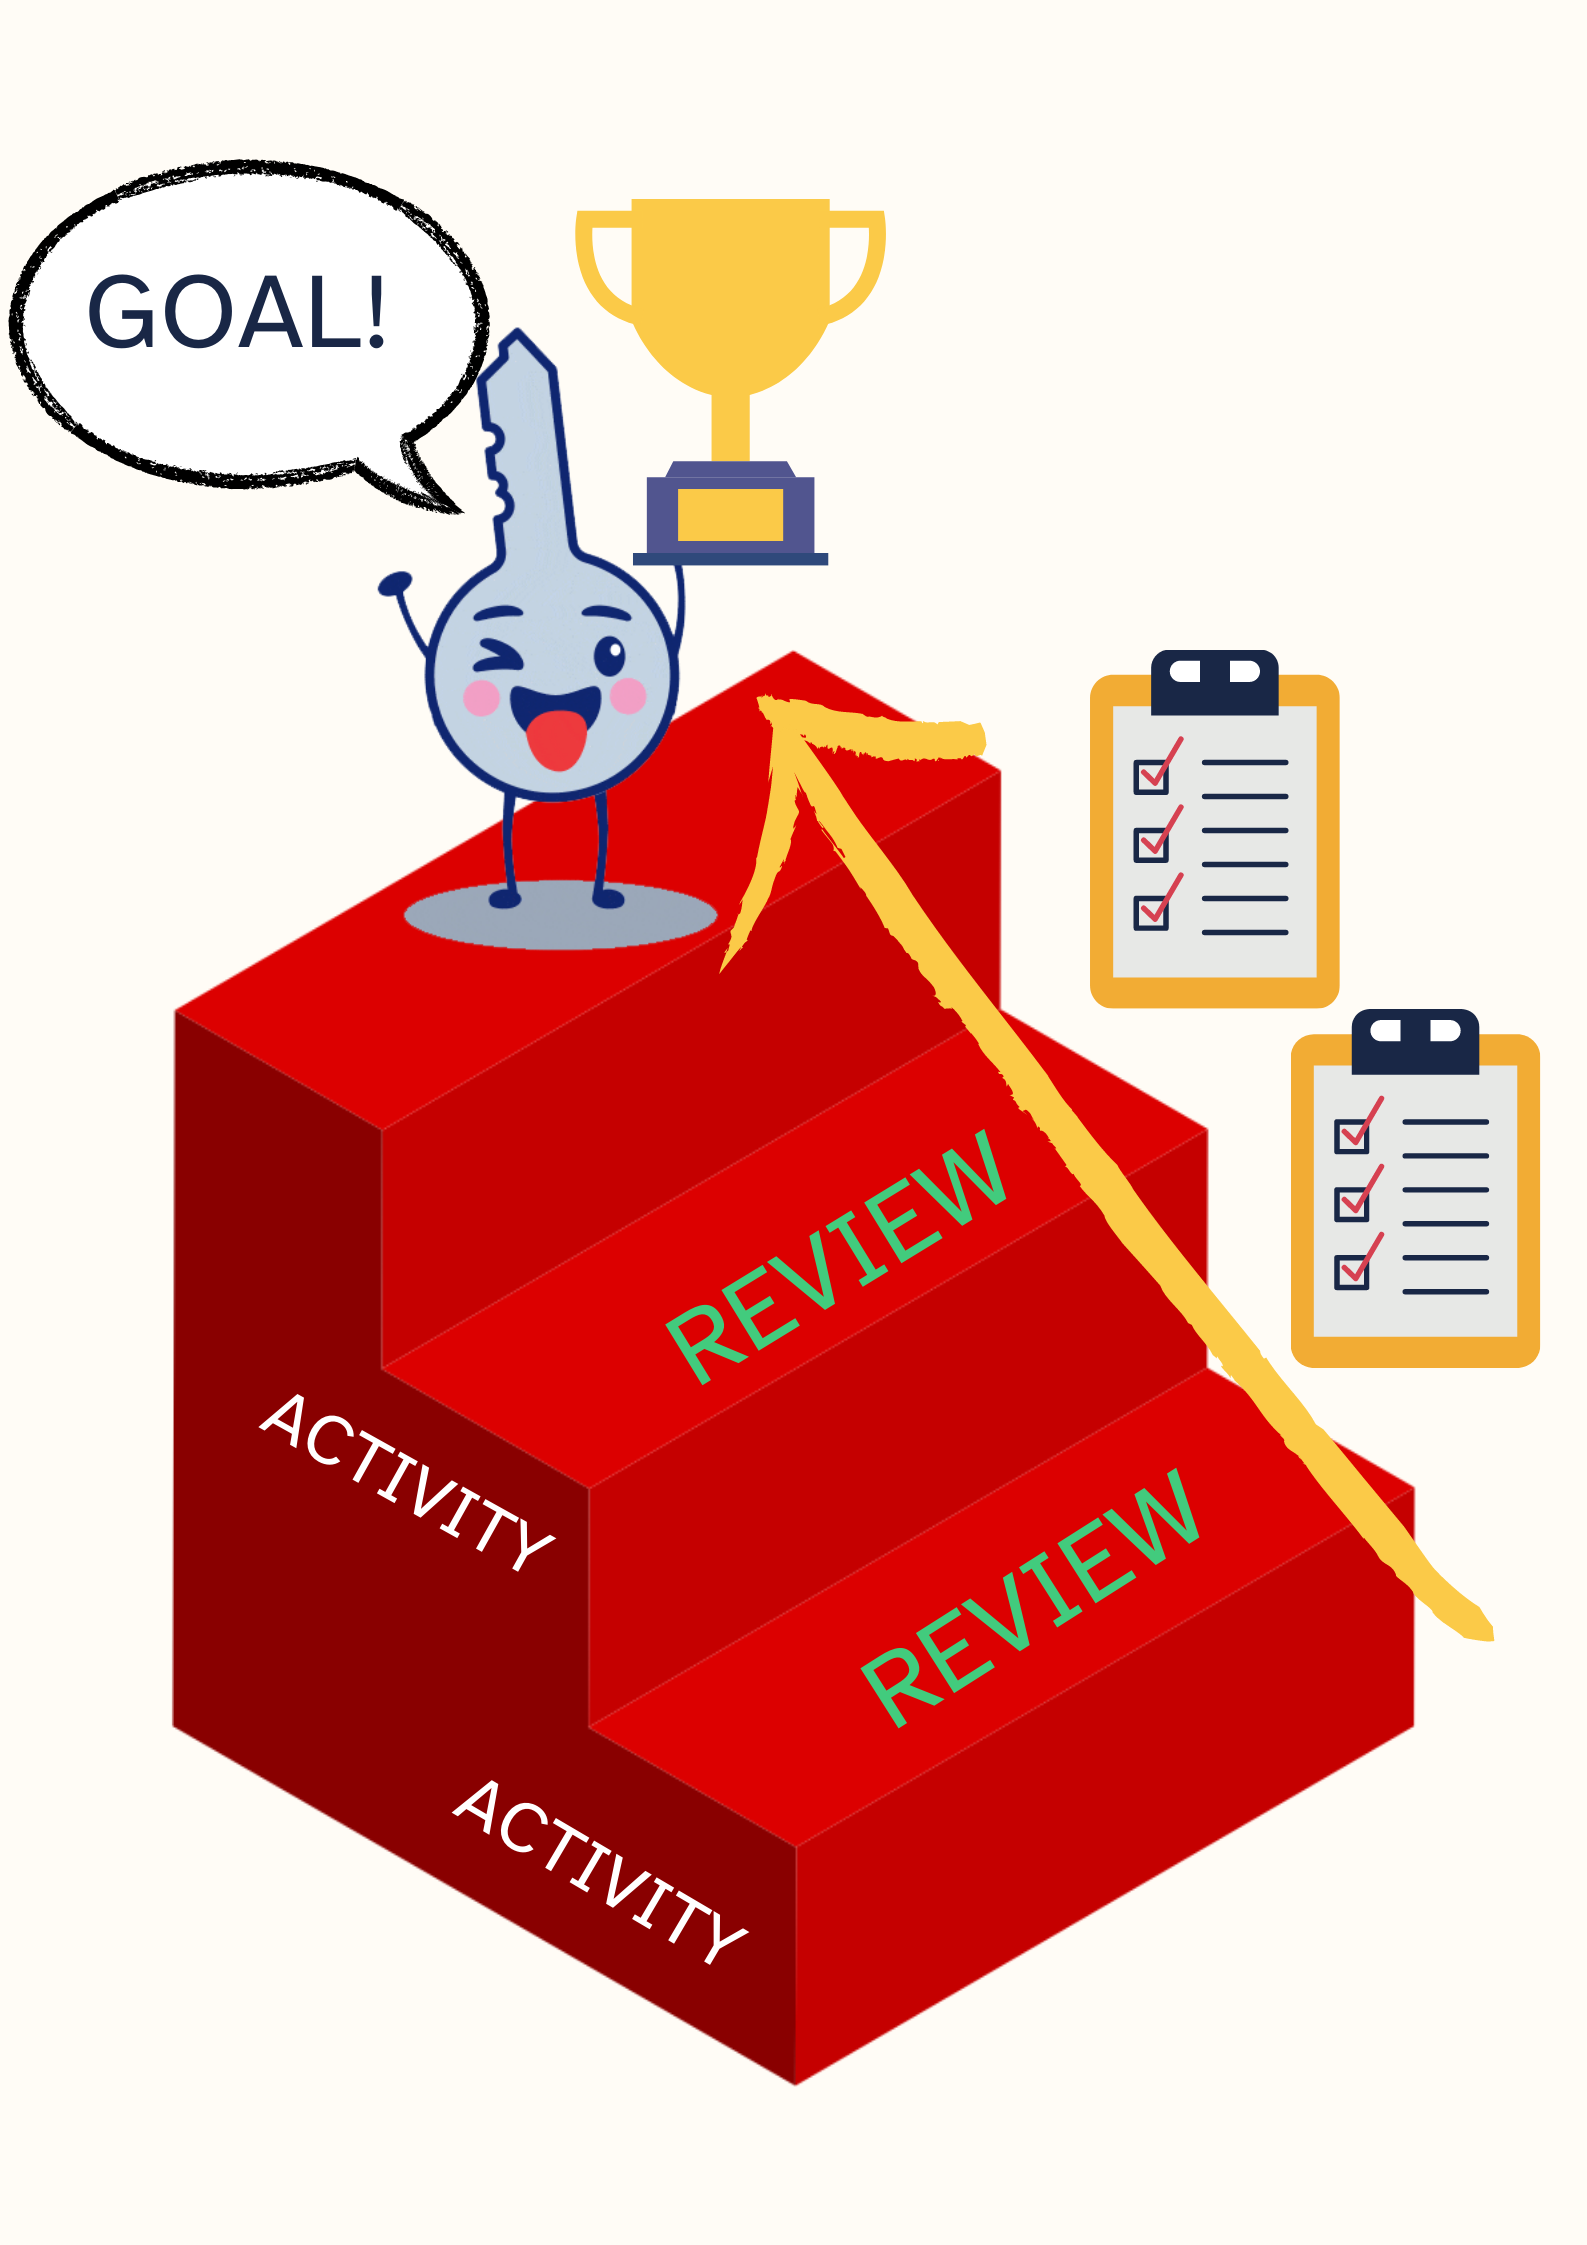 En la imagen puedes ver un póster vertical para apoyar la secuencia de actividad y revisión que hay que desarrollar para alcanzar una meta